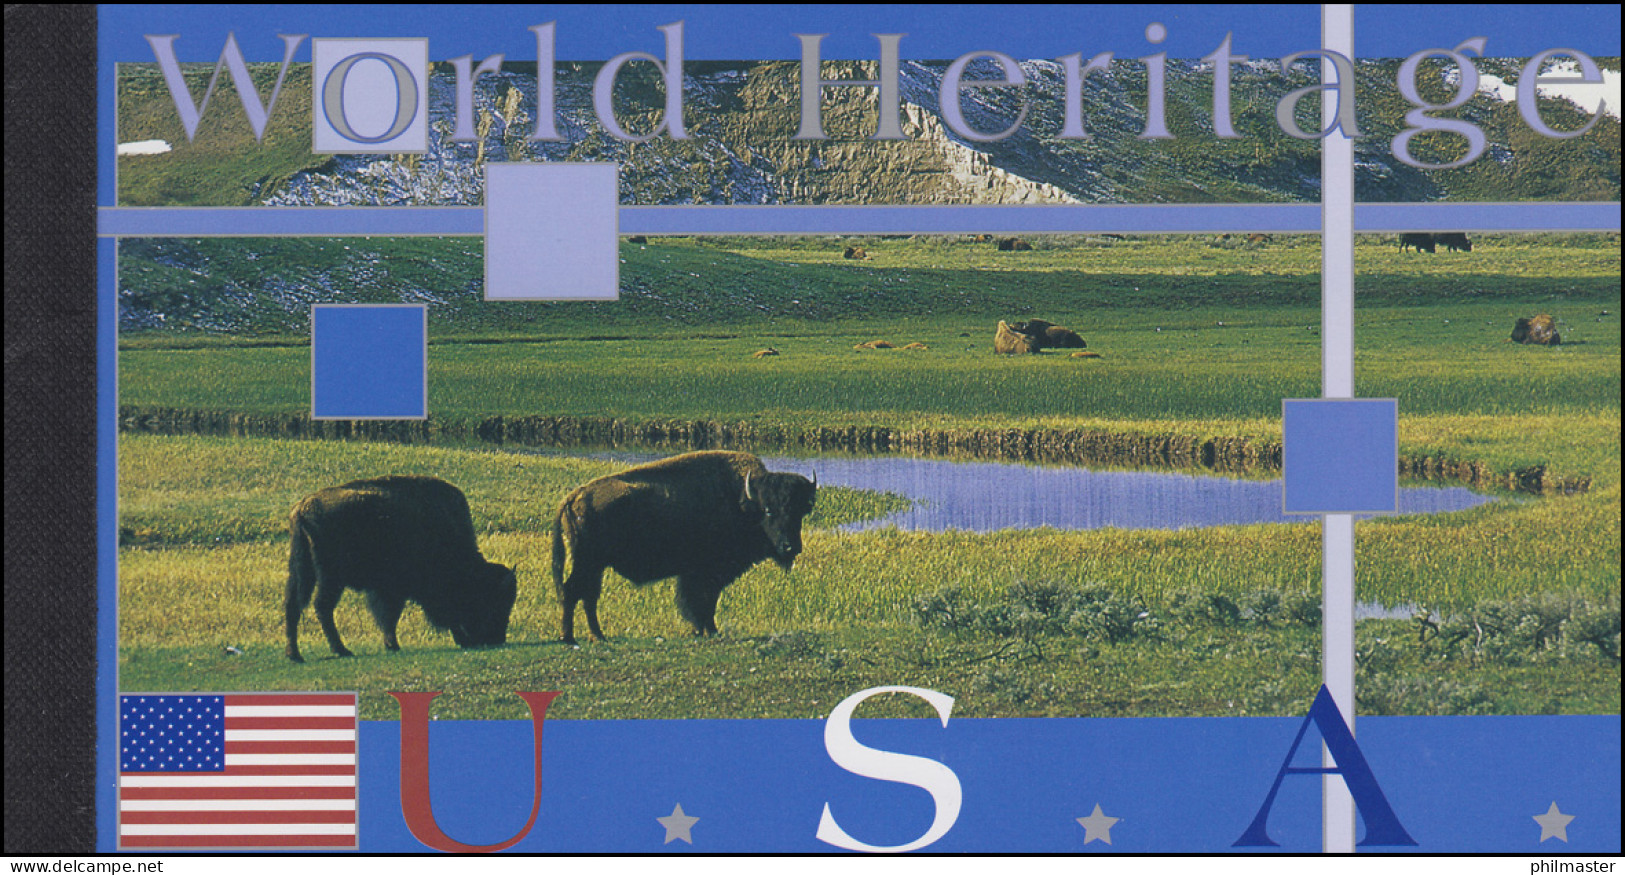 UNO New York Markenheftchen 8 United States USA 2003, Postfrisch ** - Postzegelboekjes